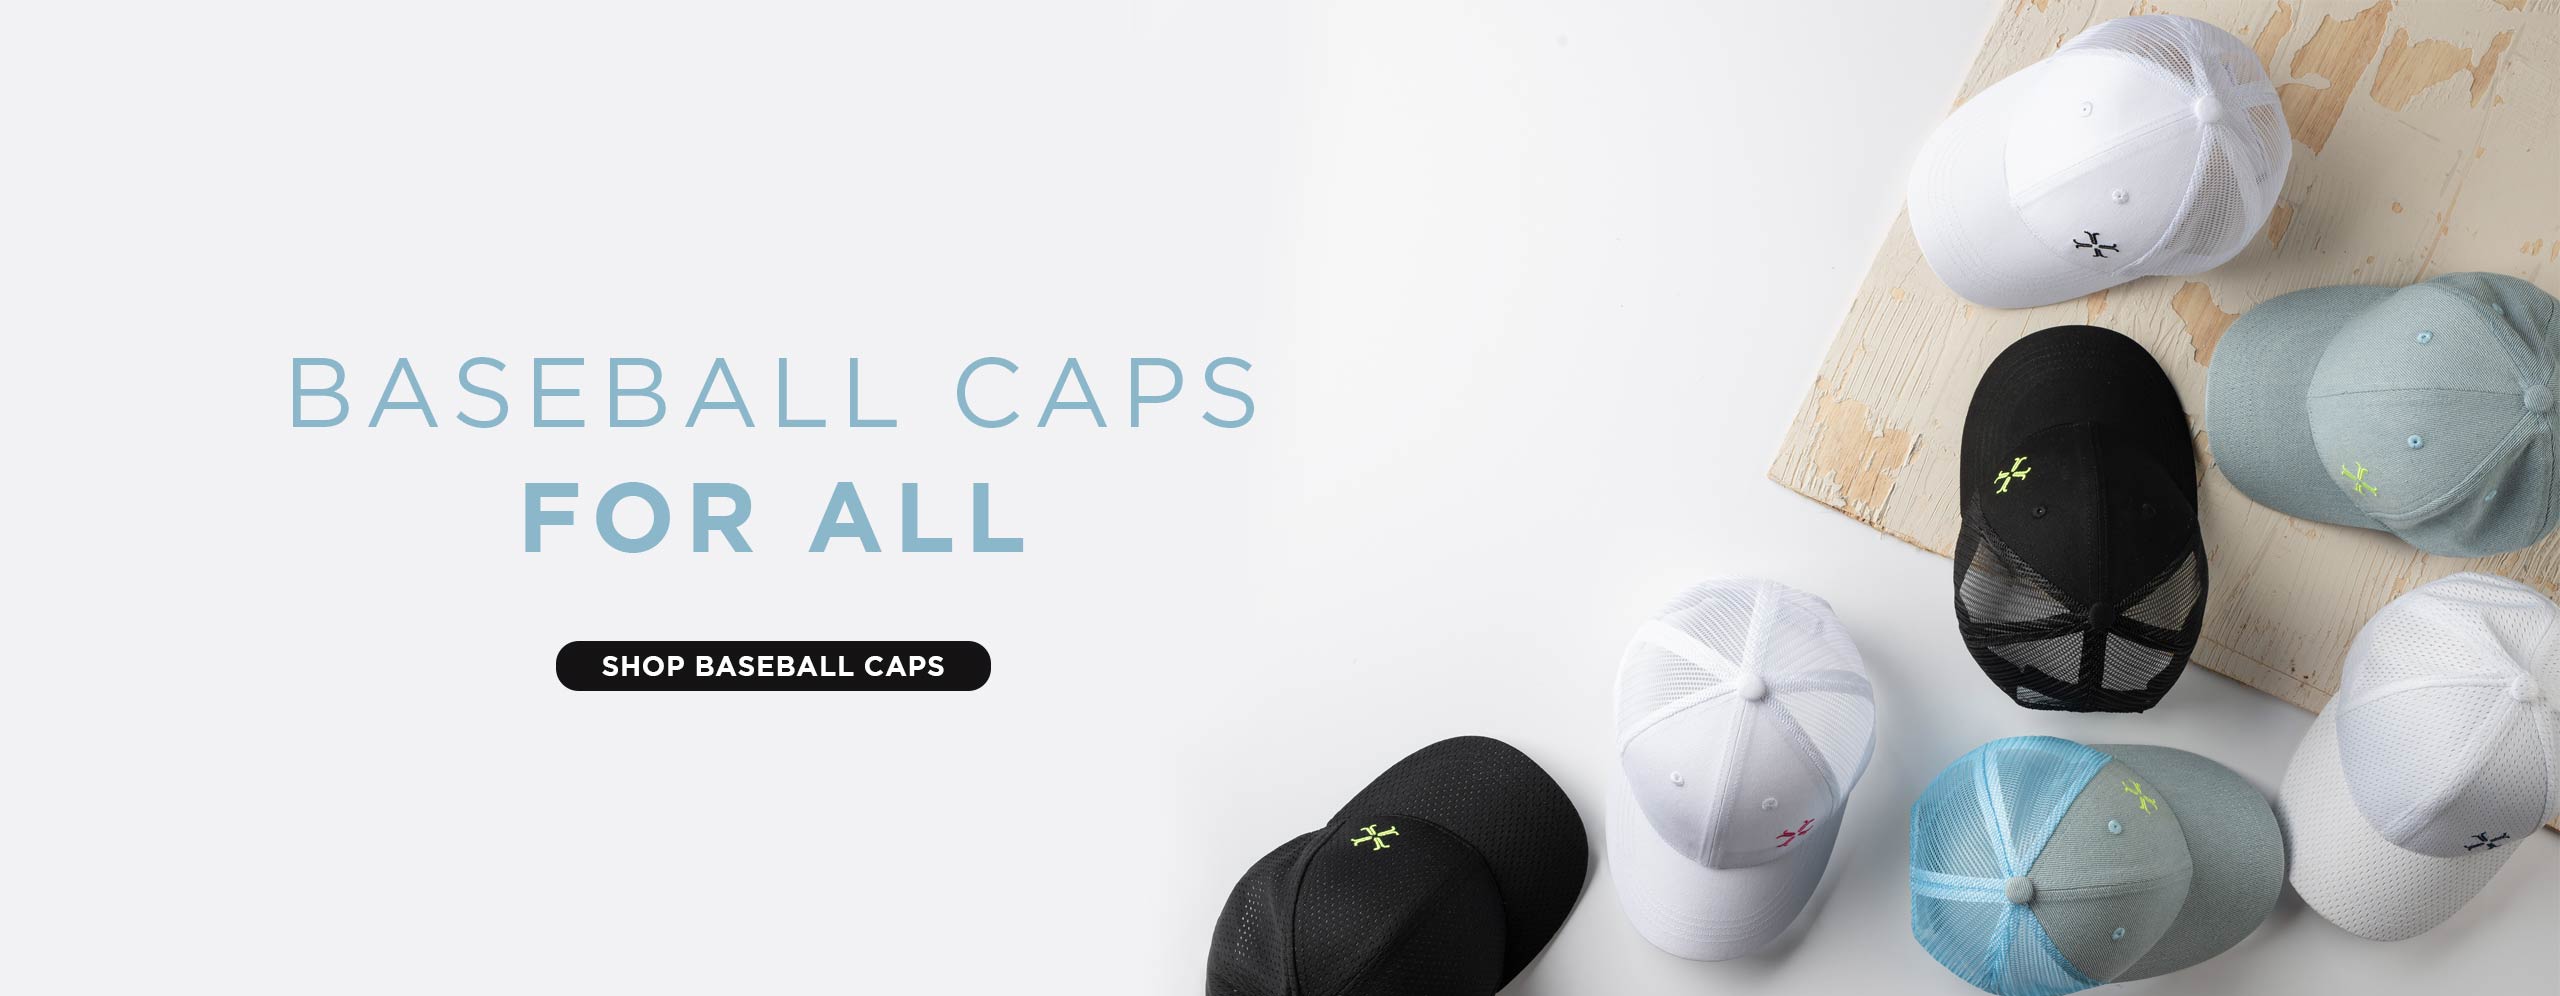 Baseball Caps for All